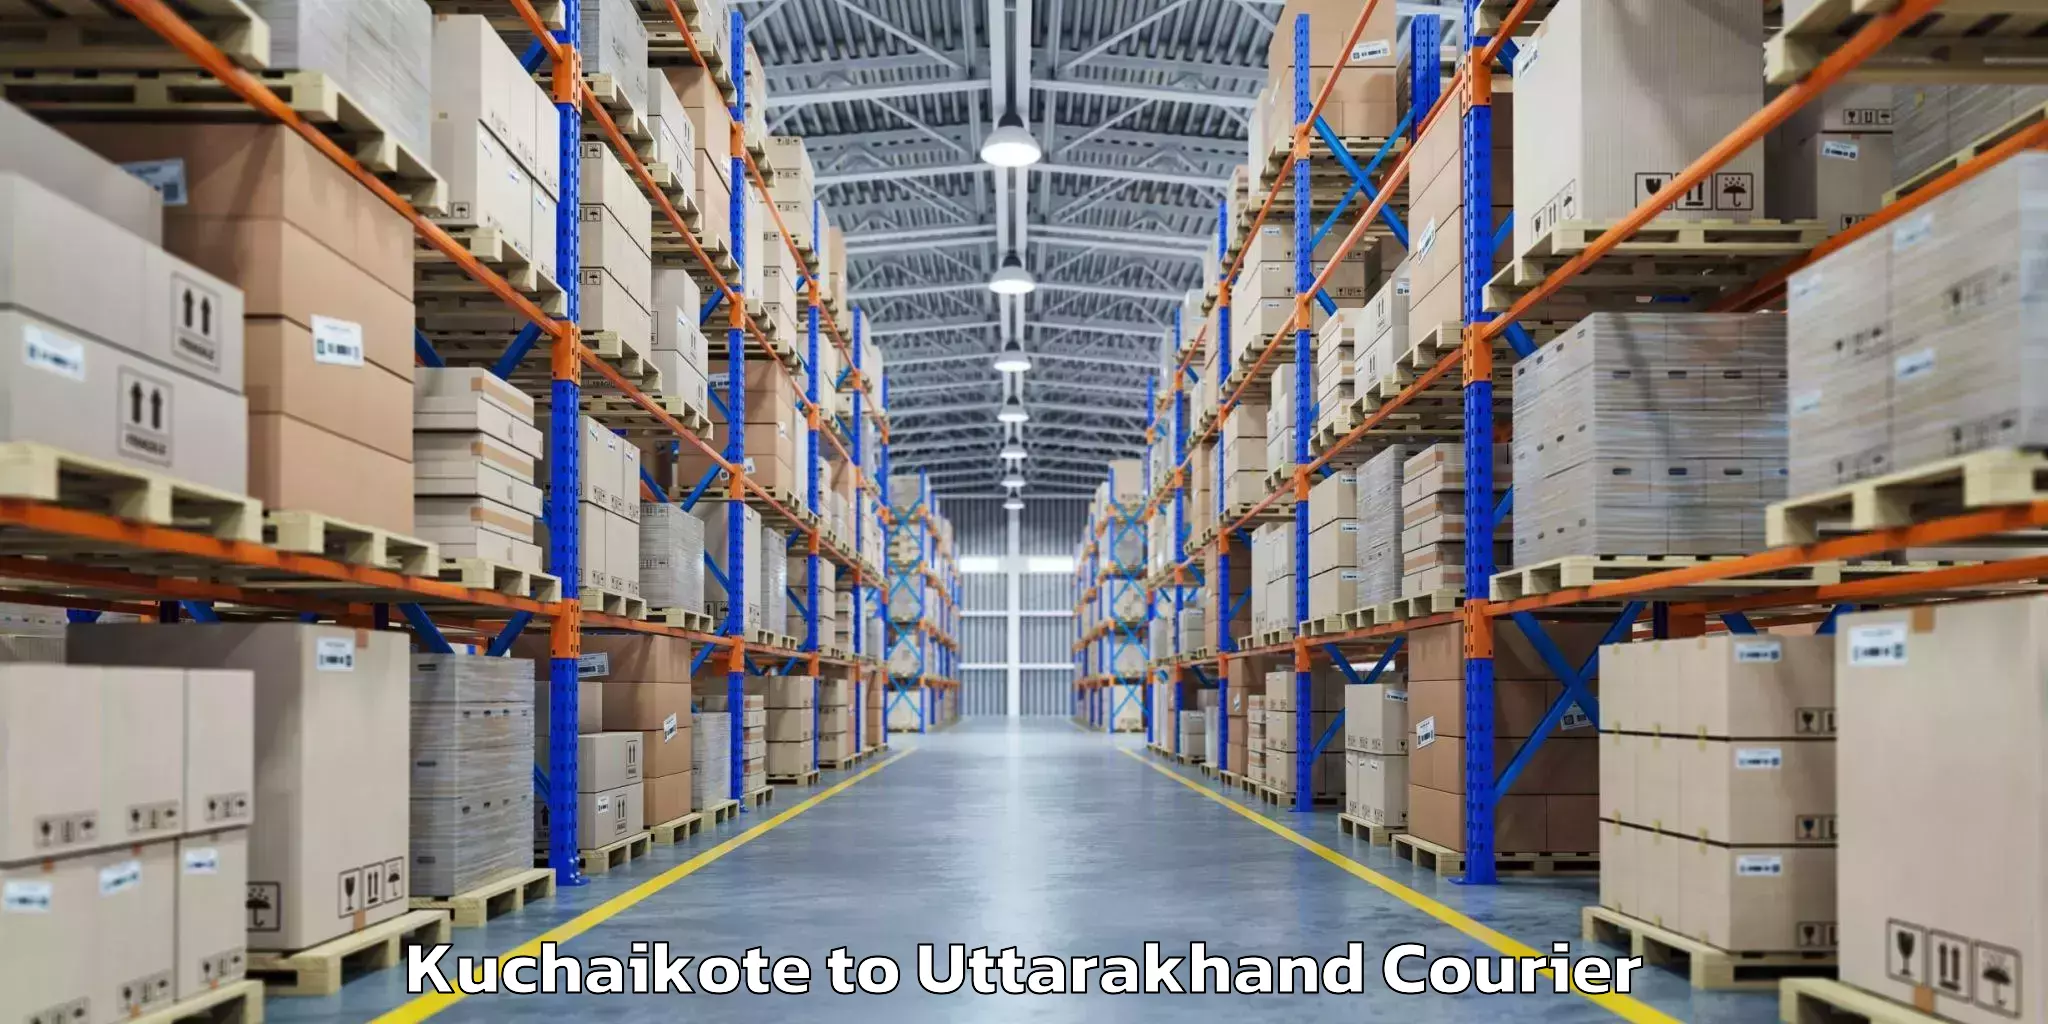 Baggage shipping calculator Kuchaikote to Uttarakhand